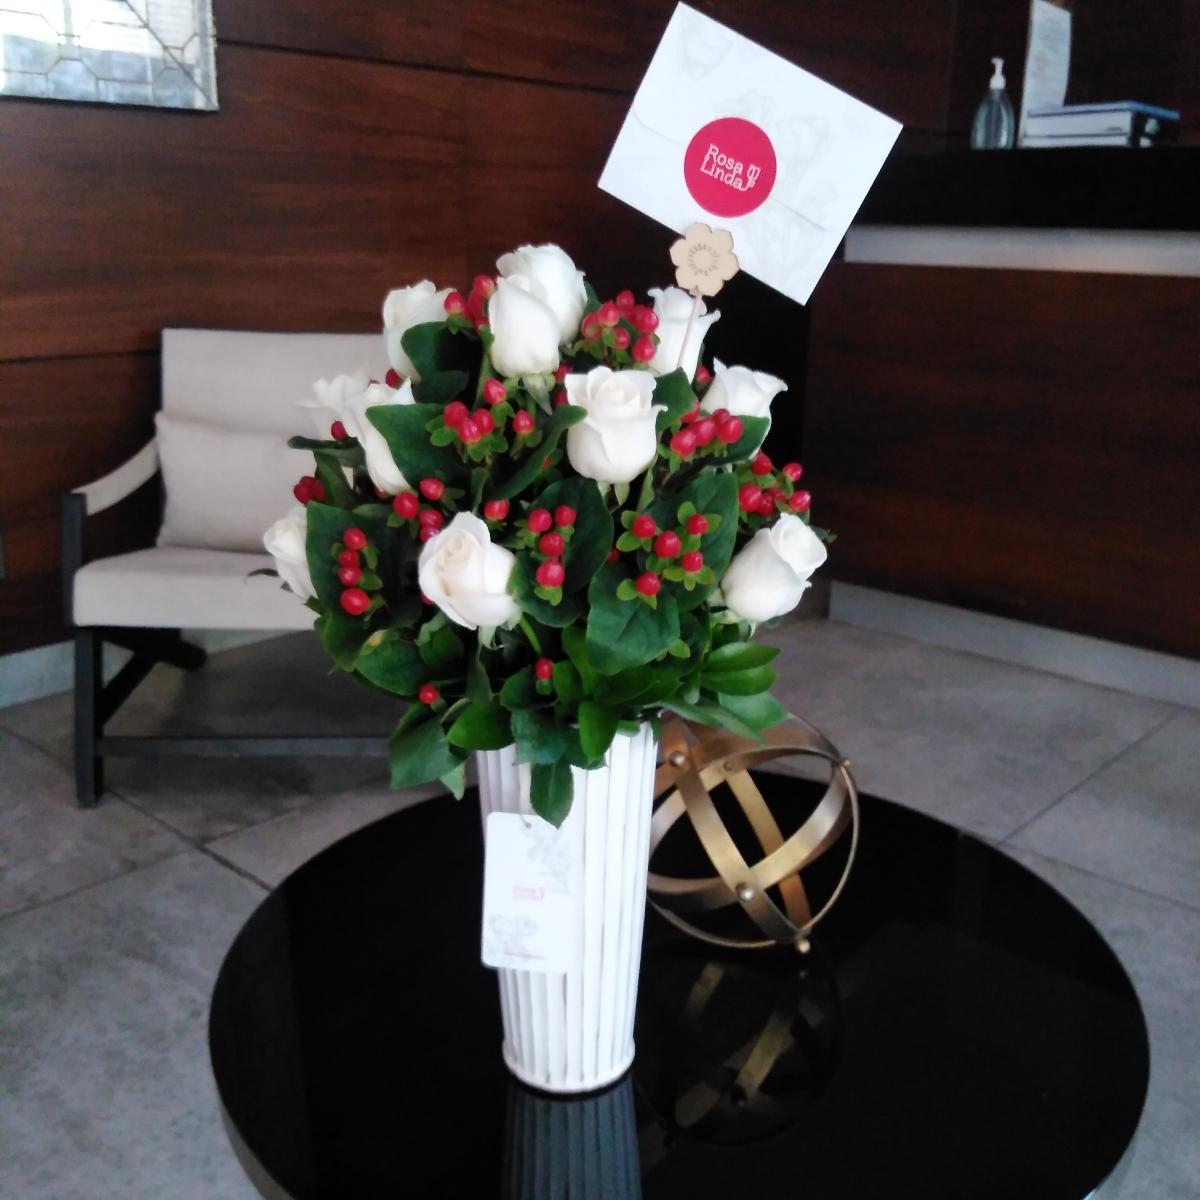 Tú y Yo blanco - Arreglo floral con rosas blancas e hypericum rojo - Pedido 254551